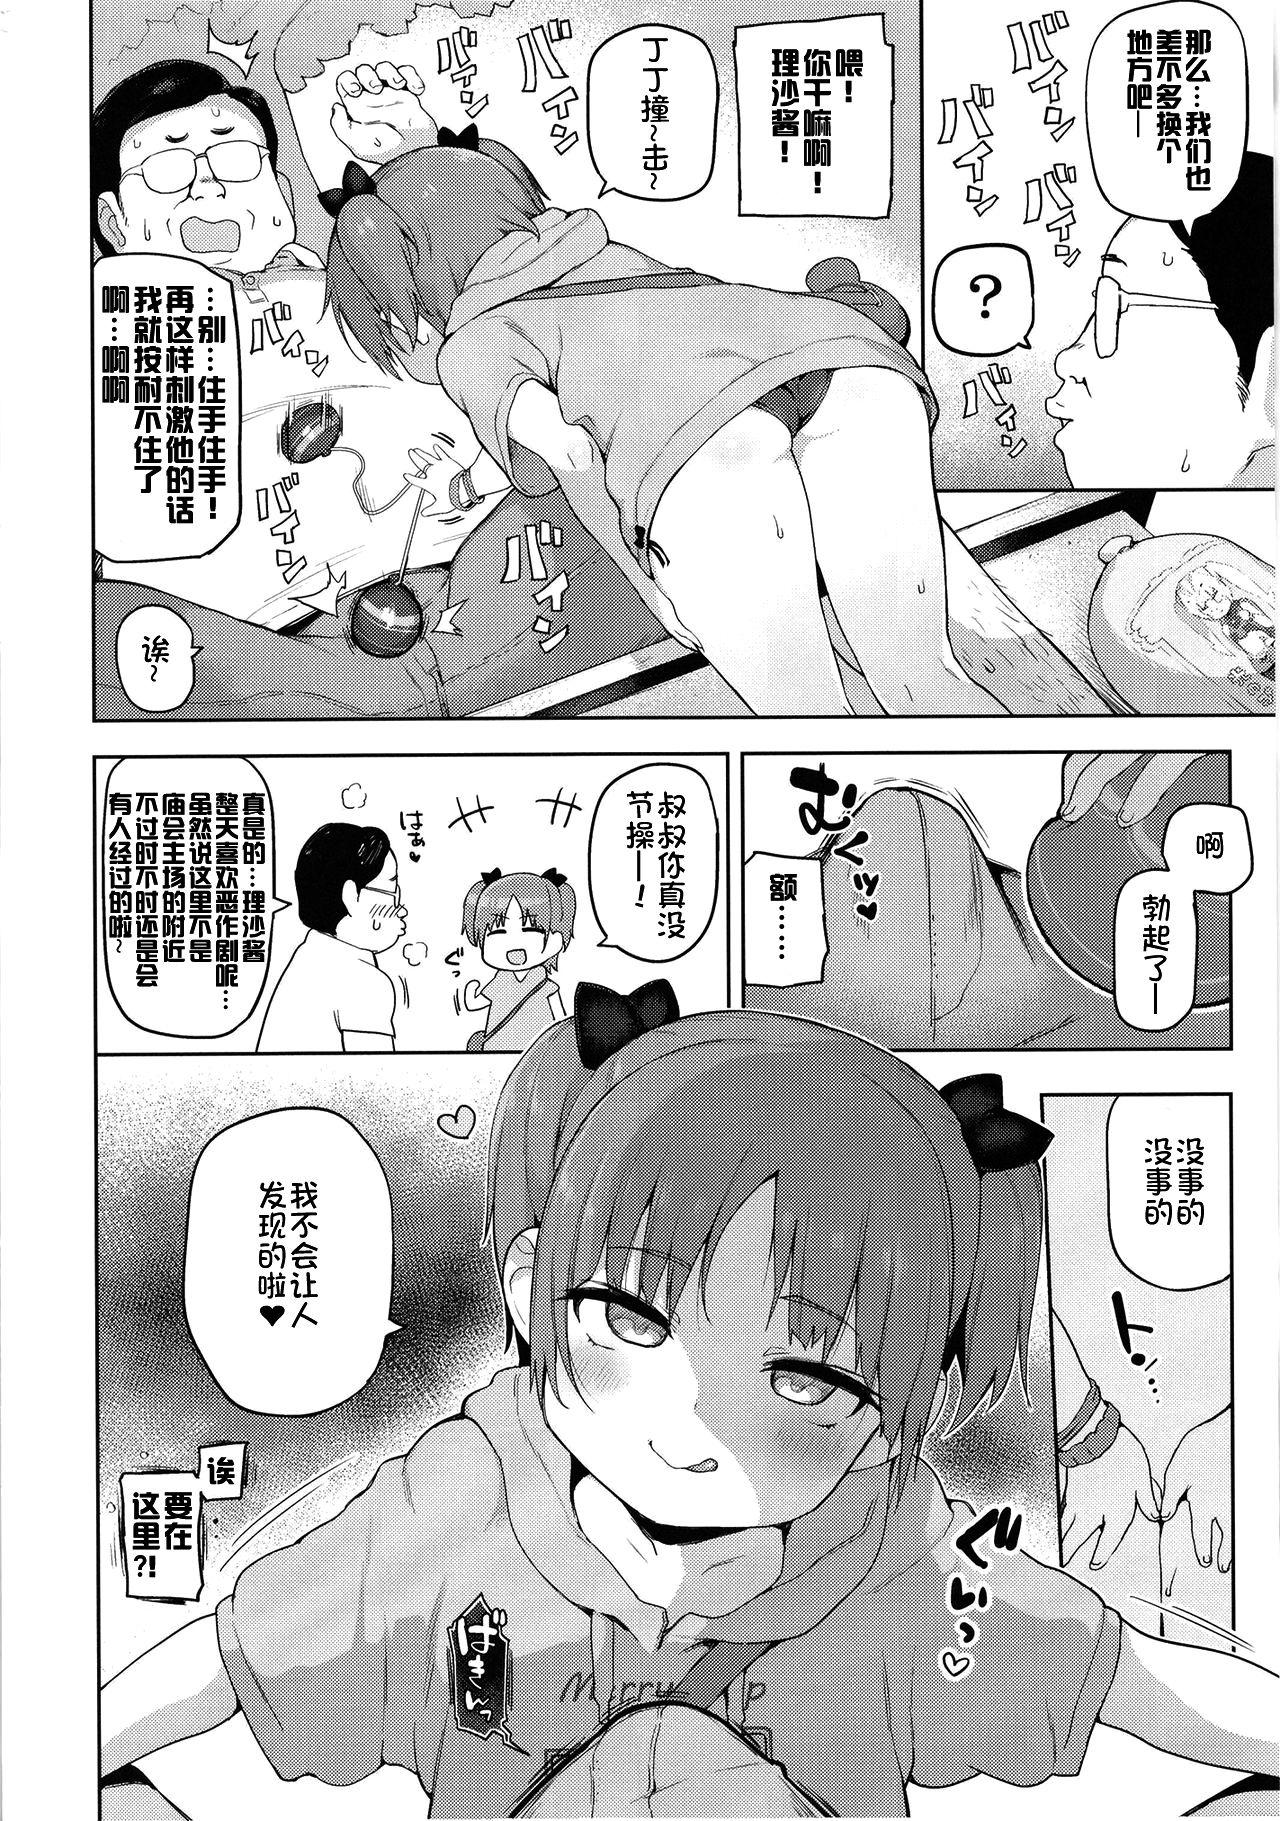 Wet Pussy Omatsuri Chuuni Femdom Porn - Page 6